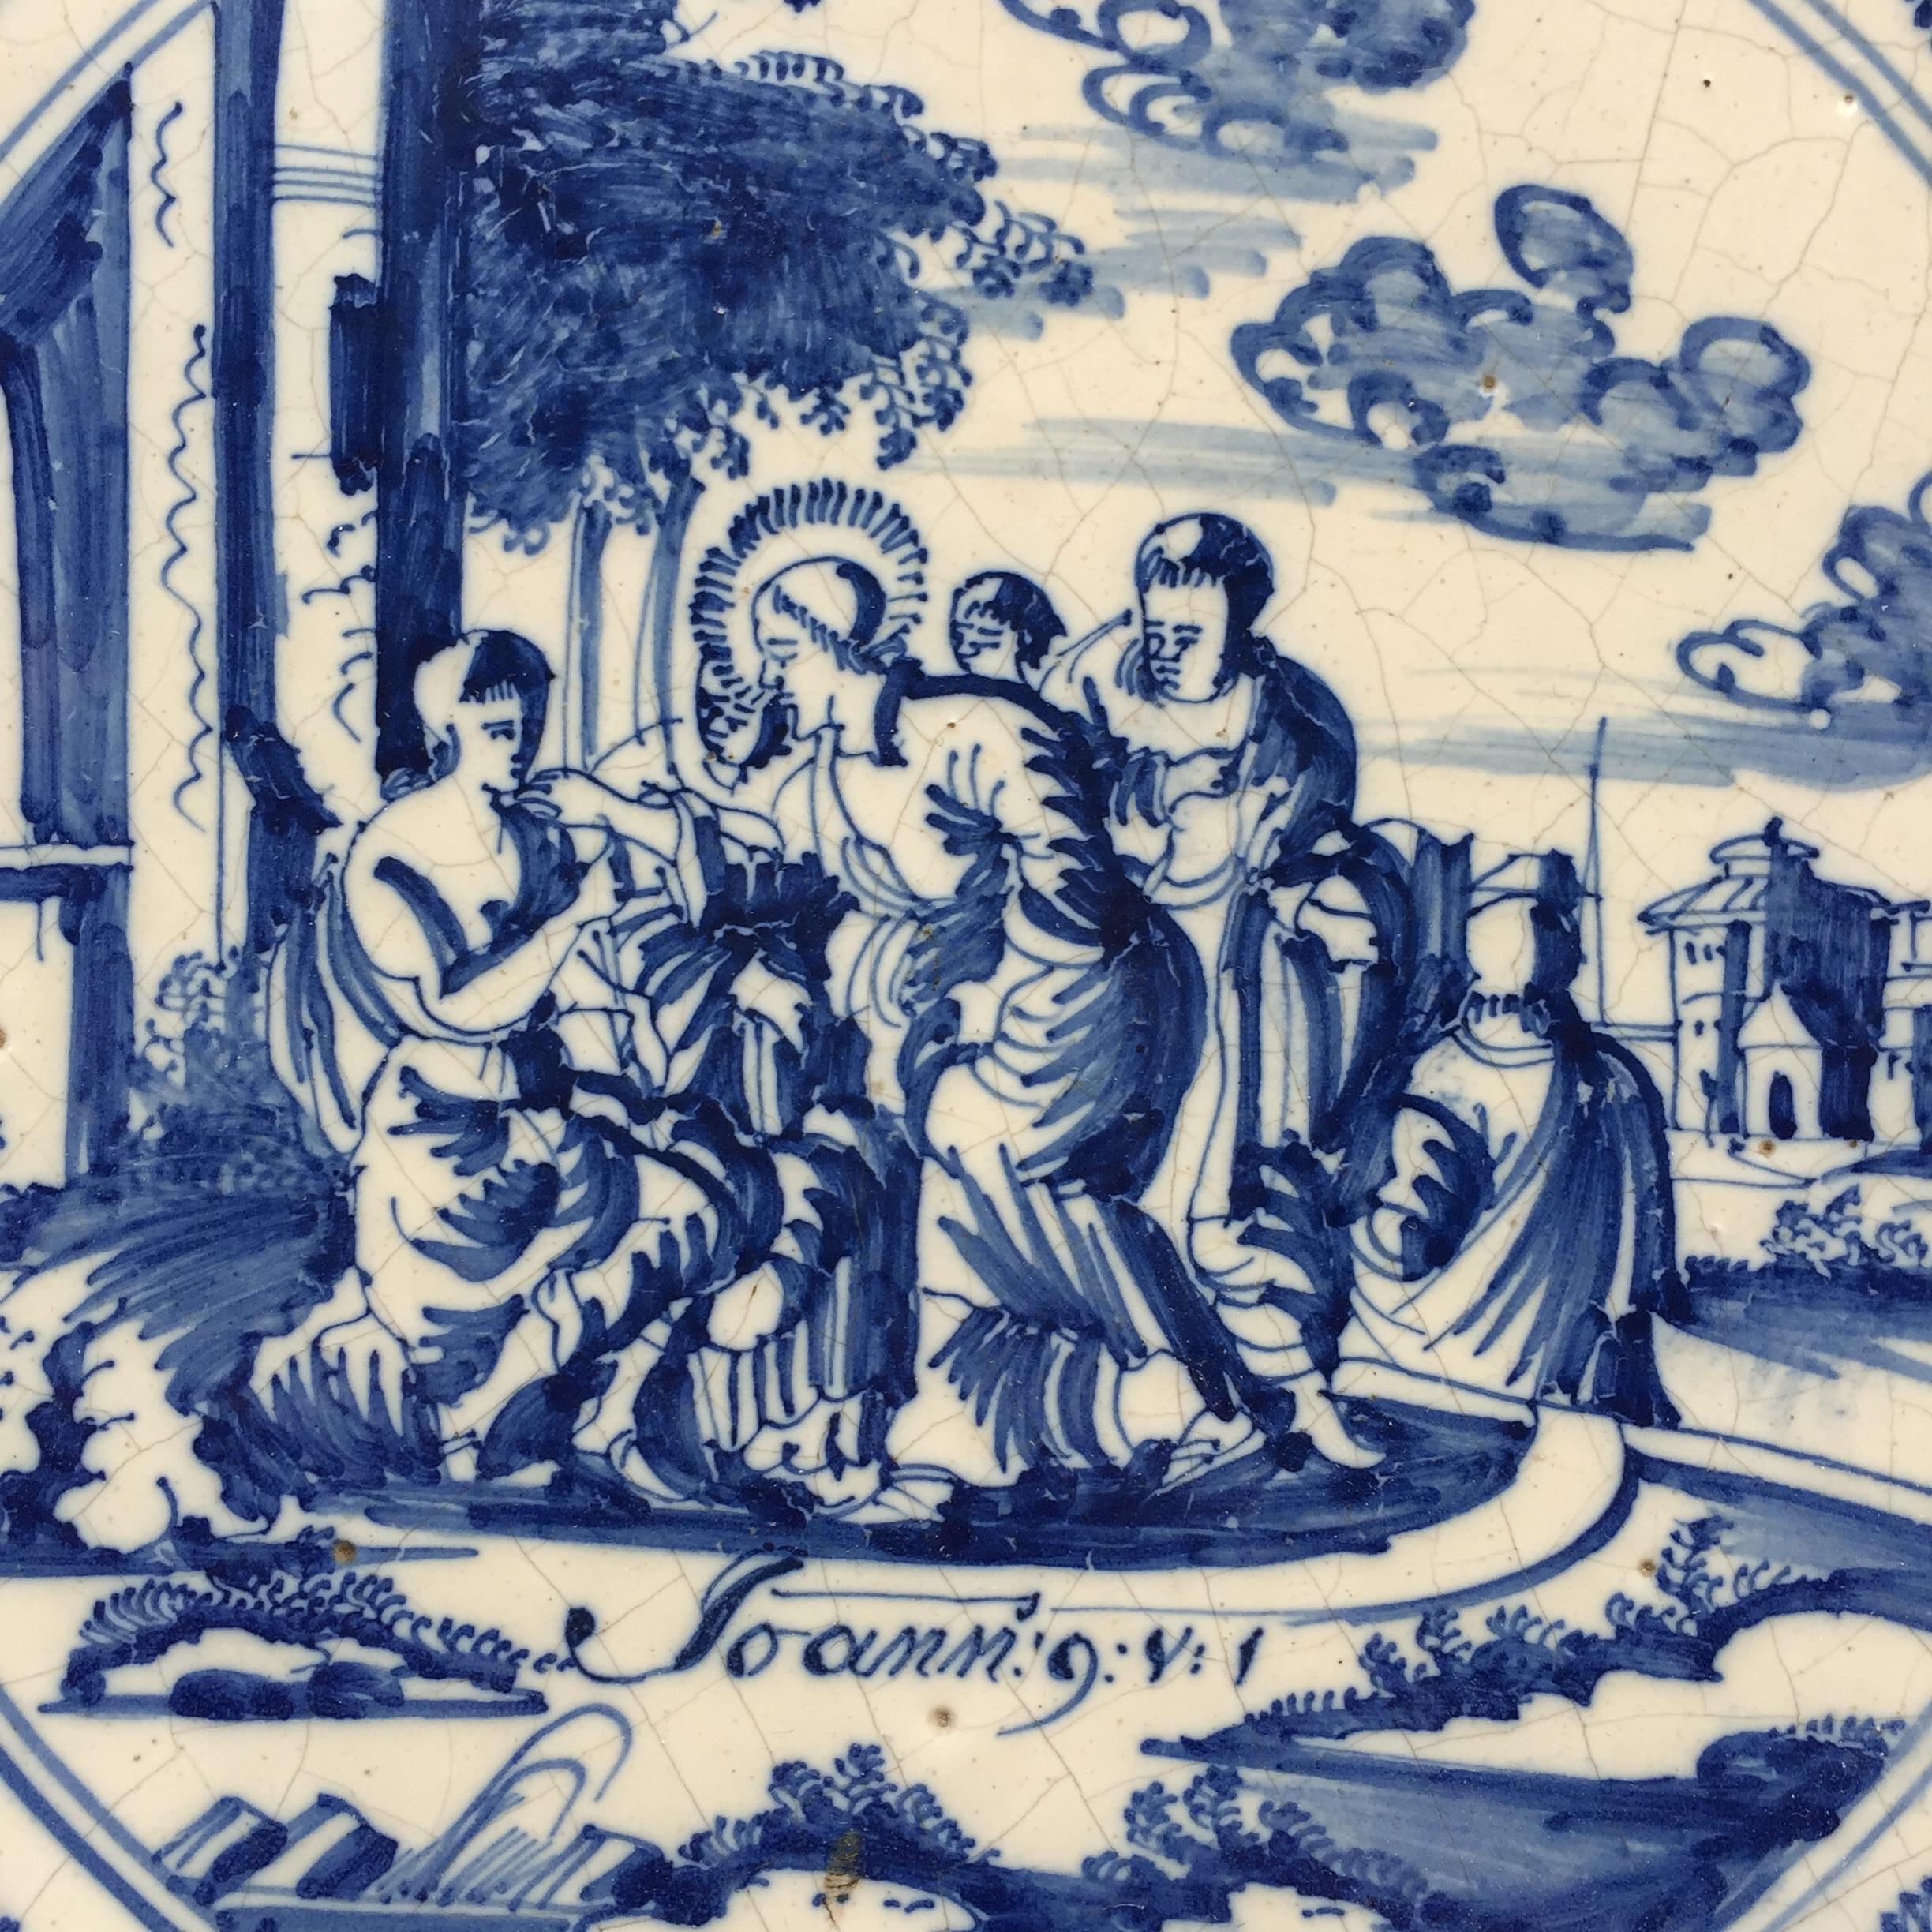 Die Niederlande
Amsterdam
CIRCA 1725 - 1775

Eine schöne blau-weiße holländische Fliese mit einer biblischen Dekoration aus dem Neuen Testament, die zeigt, wie Jesus einen Blindgeborenen heilt (Johannes 9, Vers 1).
Diese Fliesenserie mit biblischen